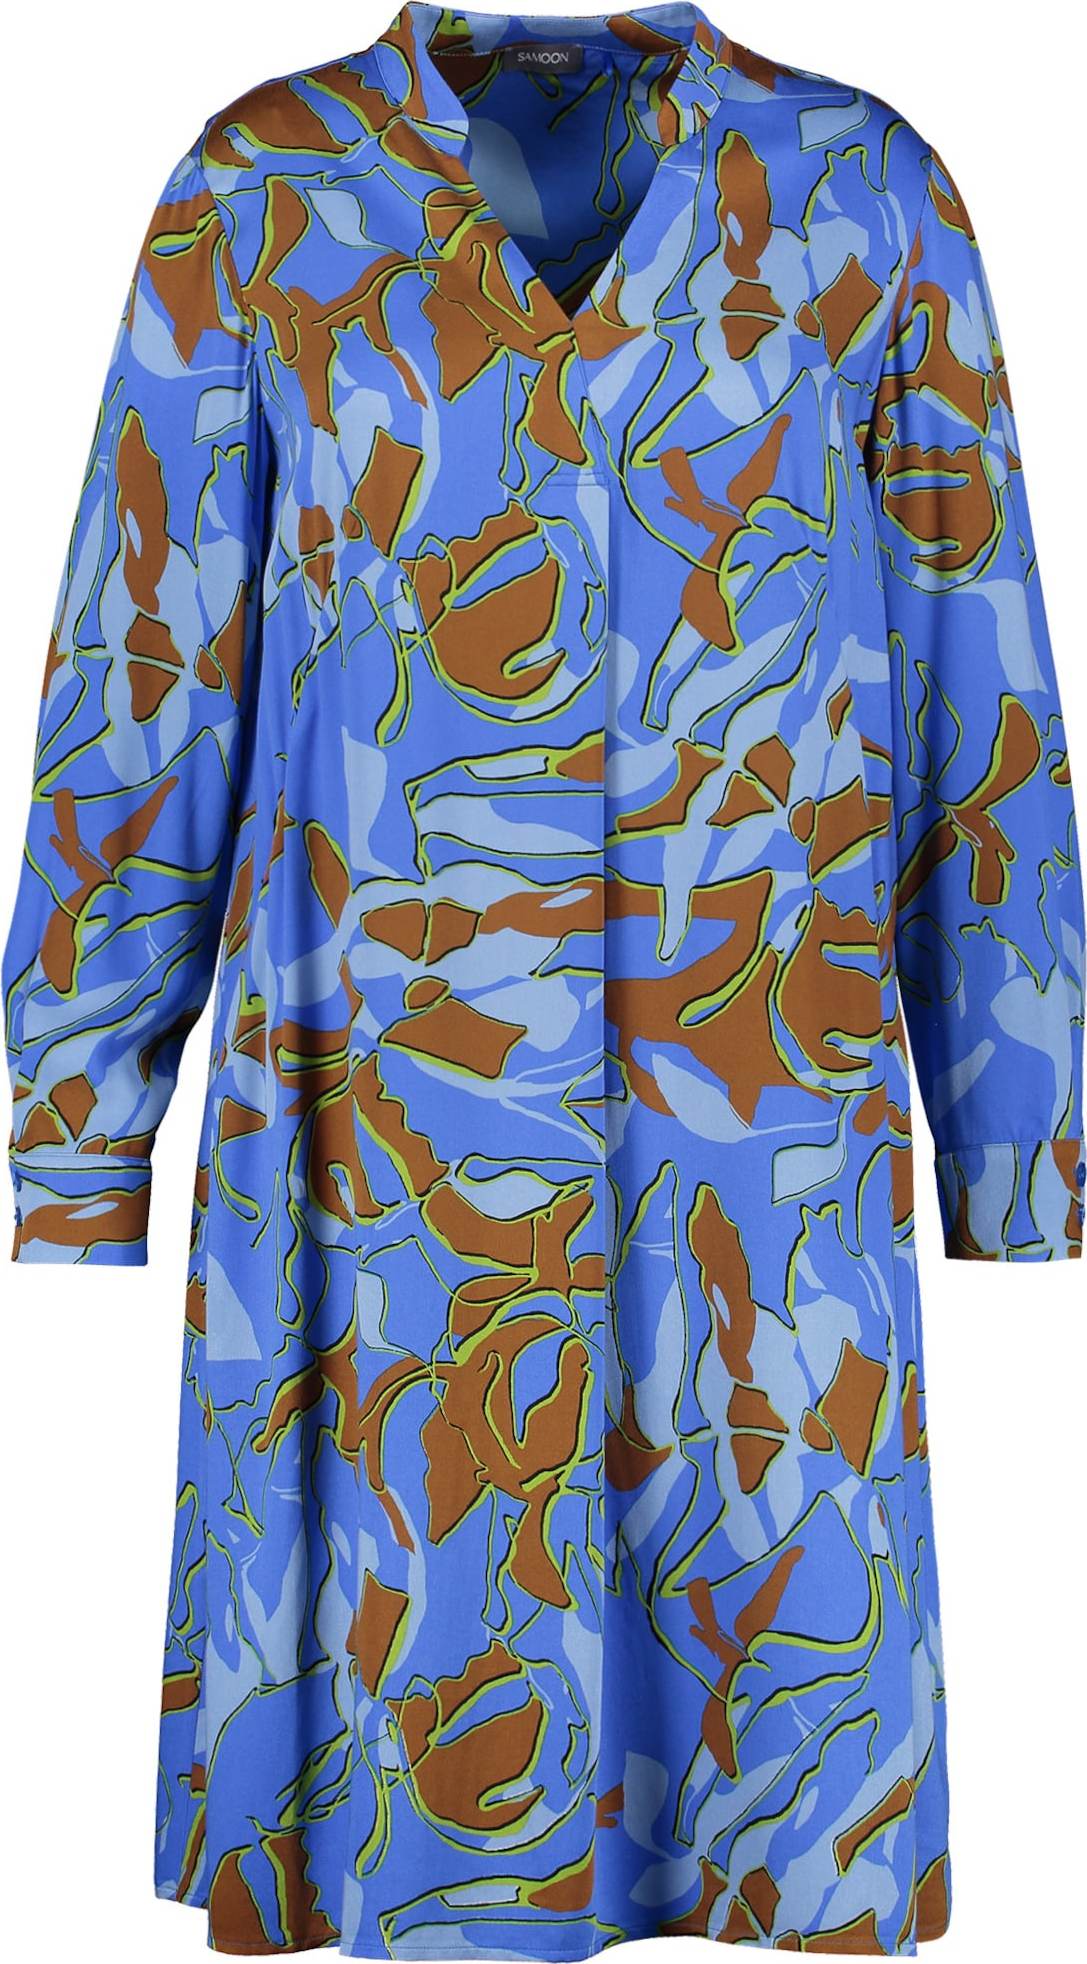 SAMOON Košilové šaty modrá / hnědý melír